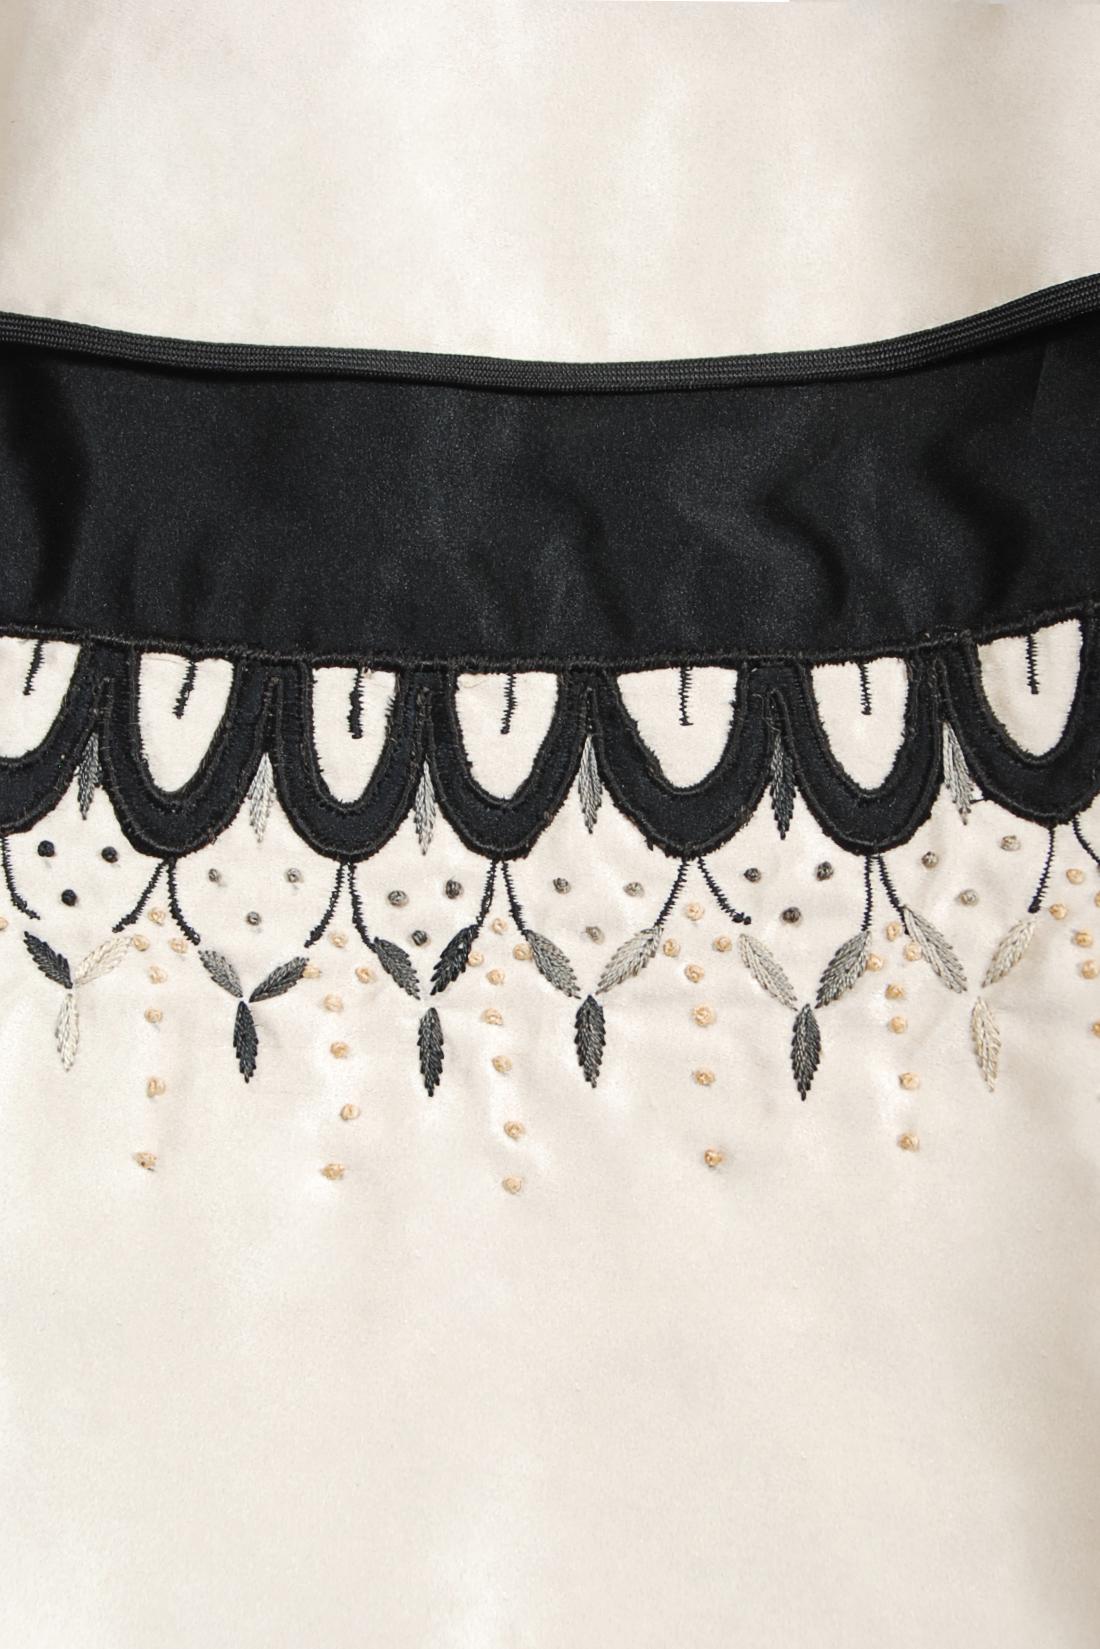 Emilio Schuberth Couture - Robe en satin brodée noire et ivoire, vintage, années 1950 en vente 7